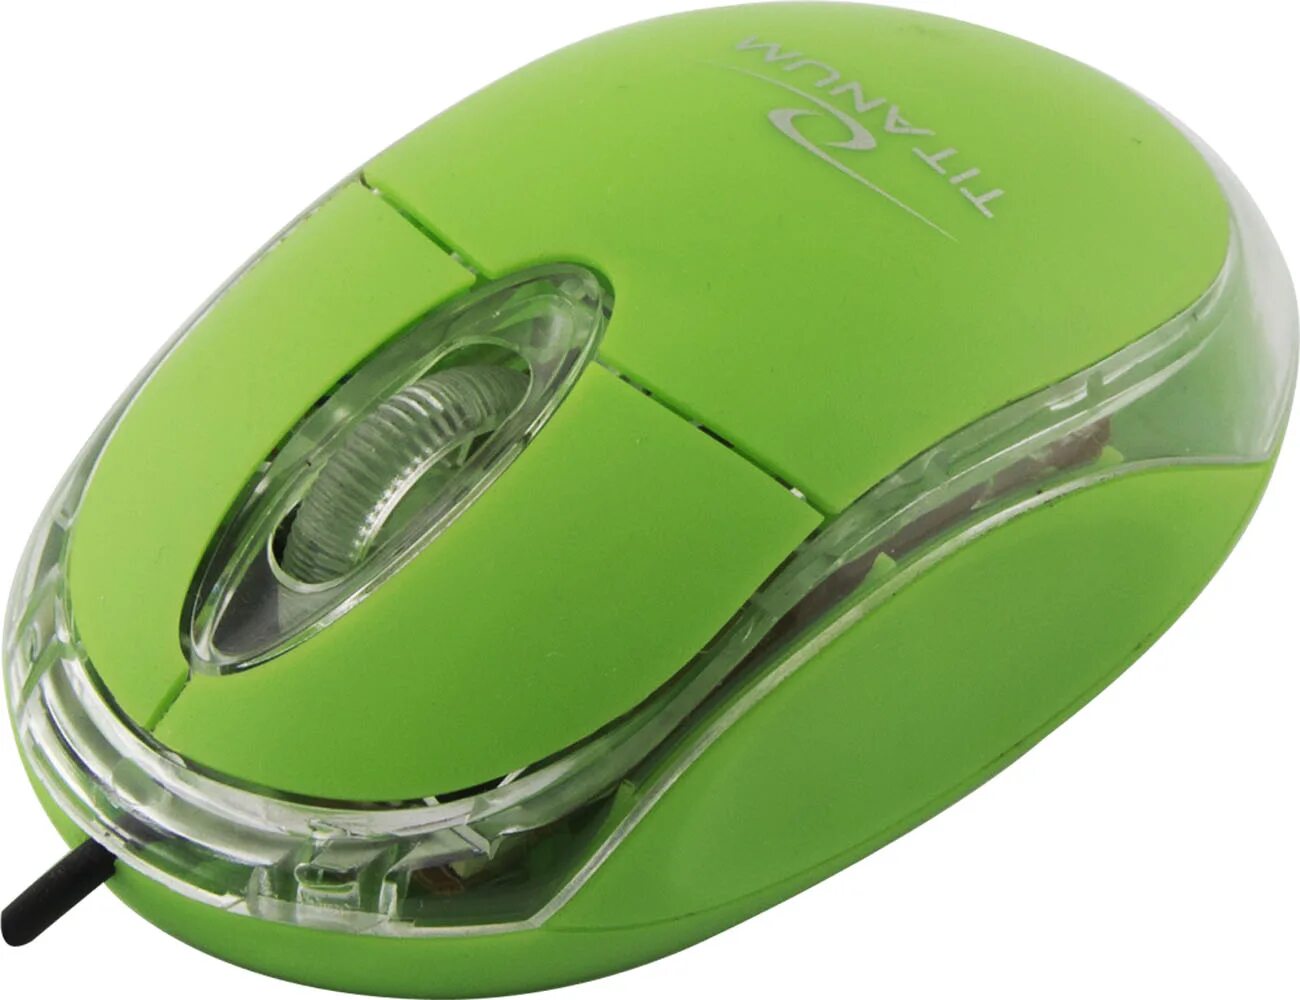 Мышка 3d Optical Mouse. Мышь Canyon CNR-msl8g Green USB+PS/2. Мышь Media-Tech mt1104g Green USB. Мышка с зеленой подсветкой.